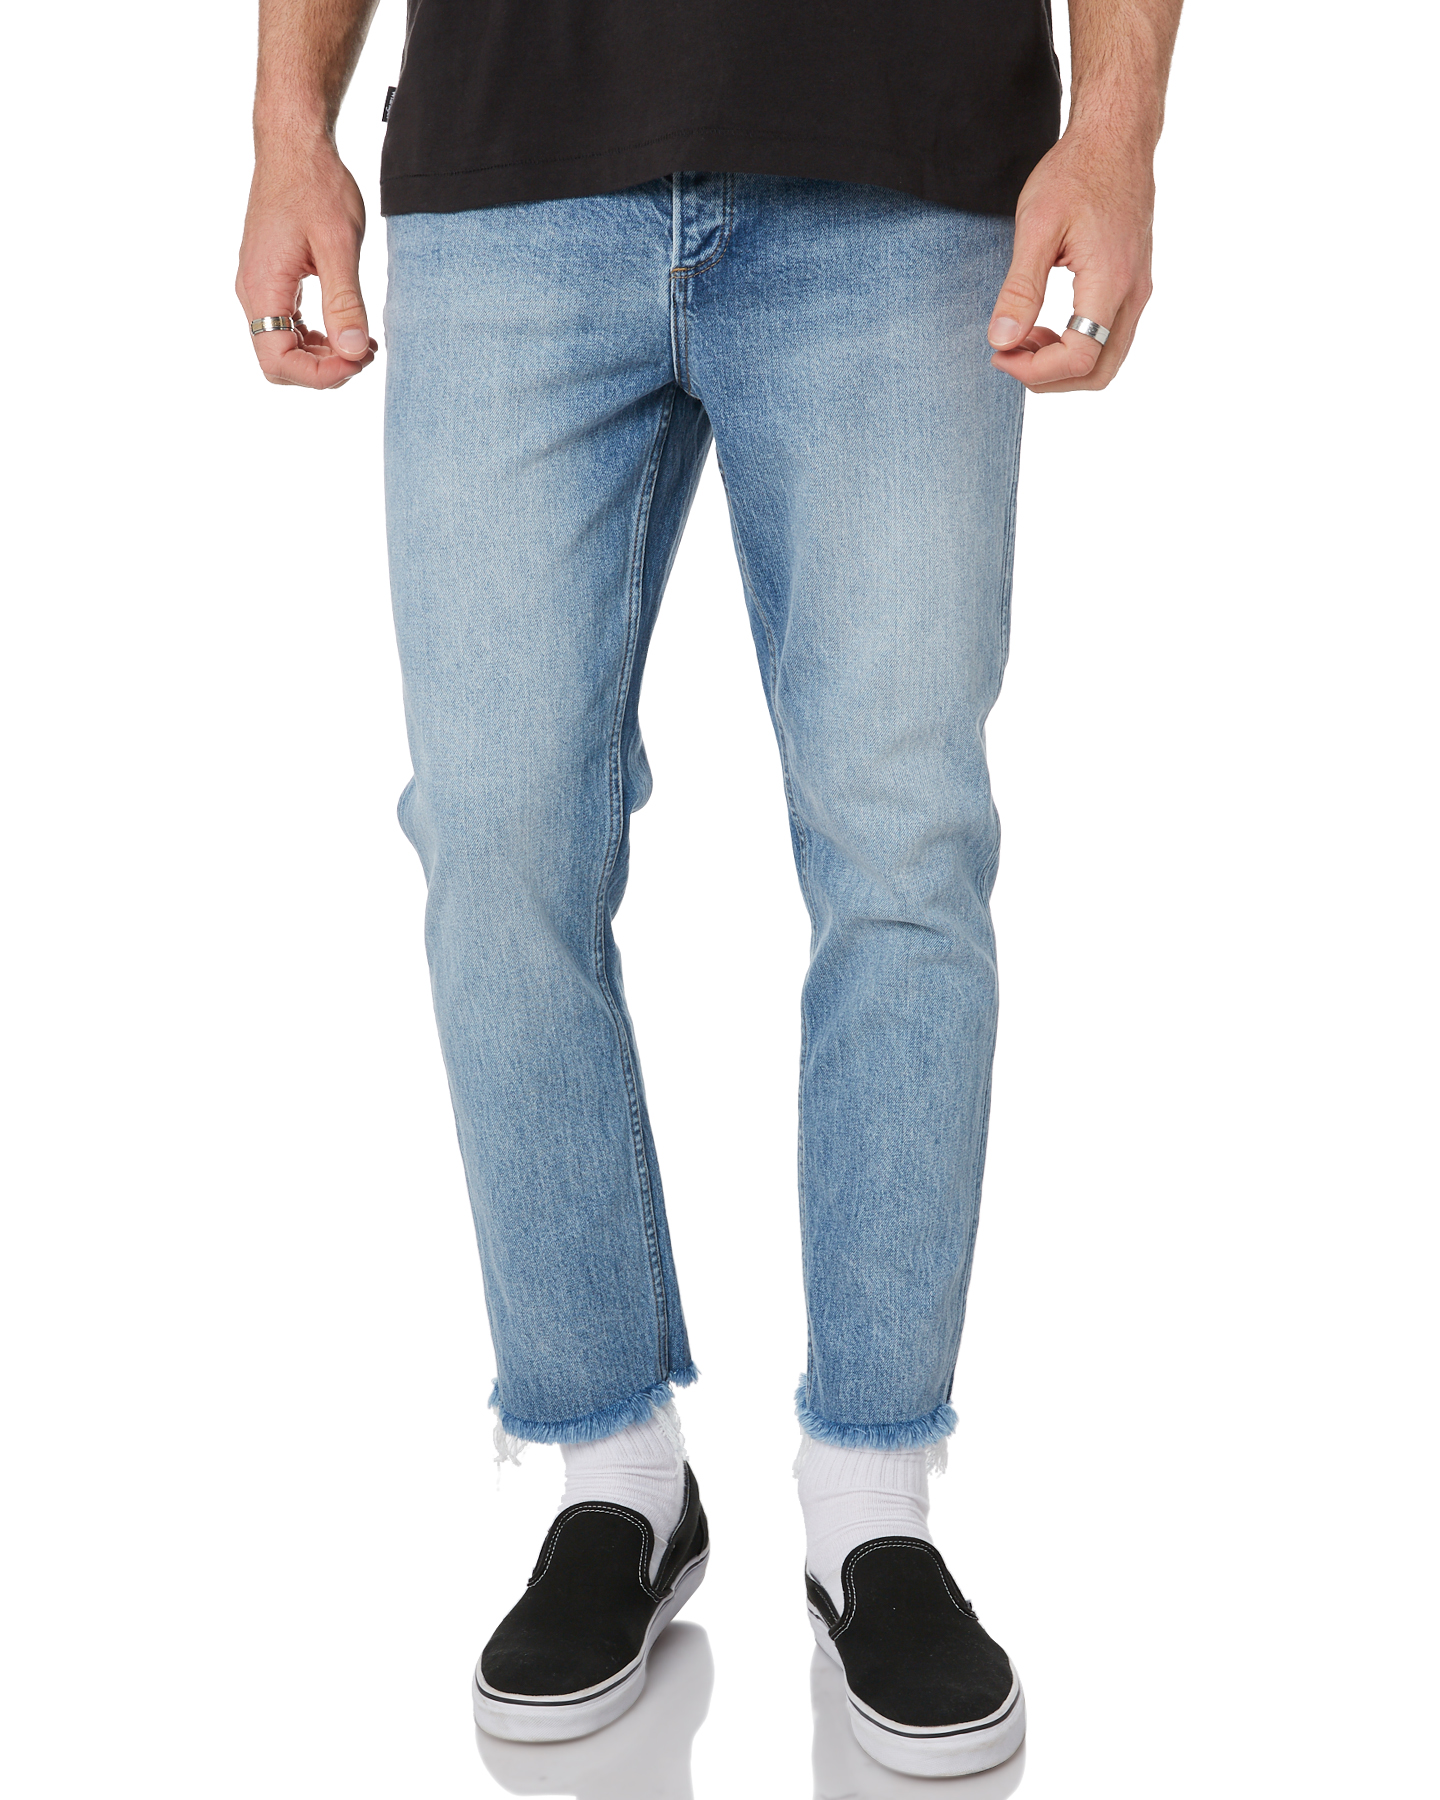 Wrangler Mens Jeans Size Chart